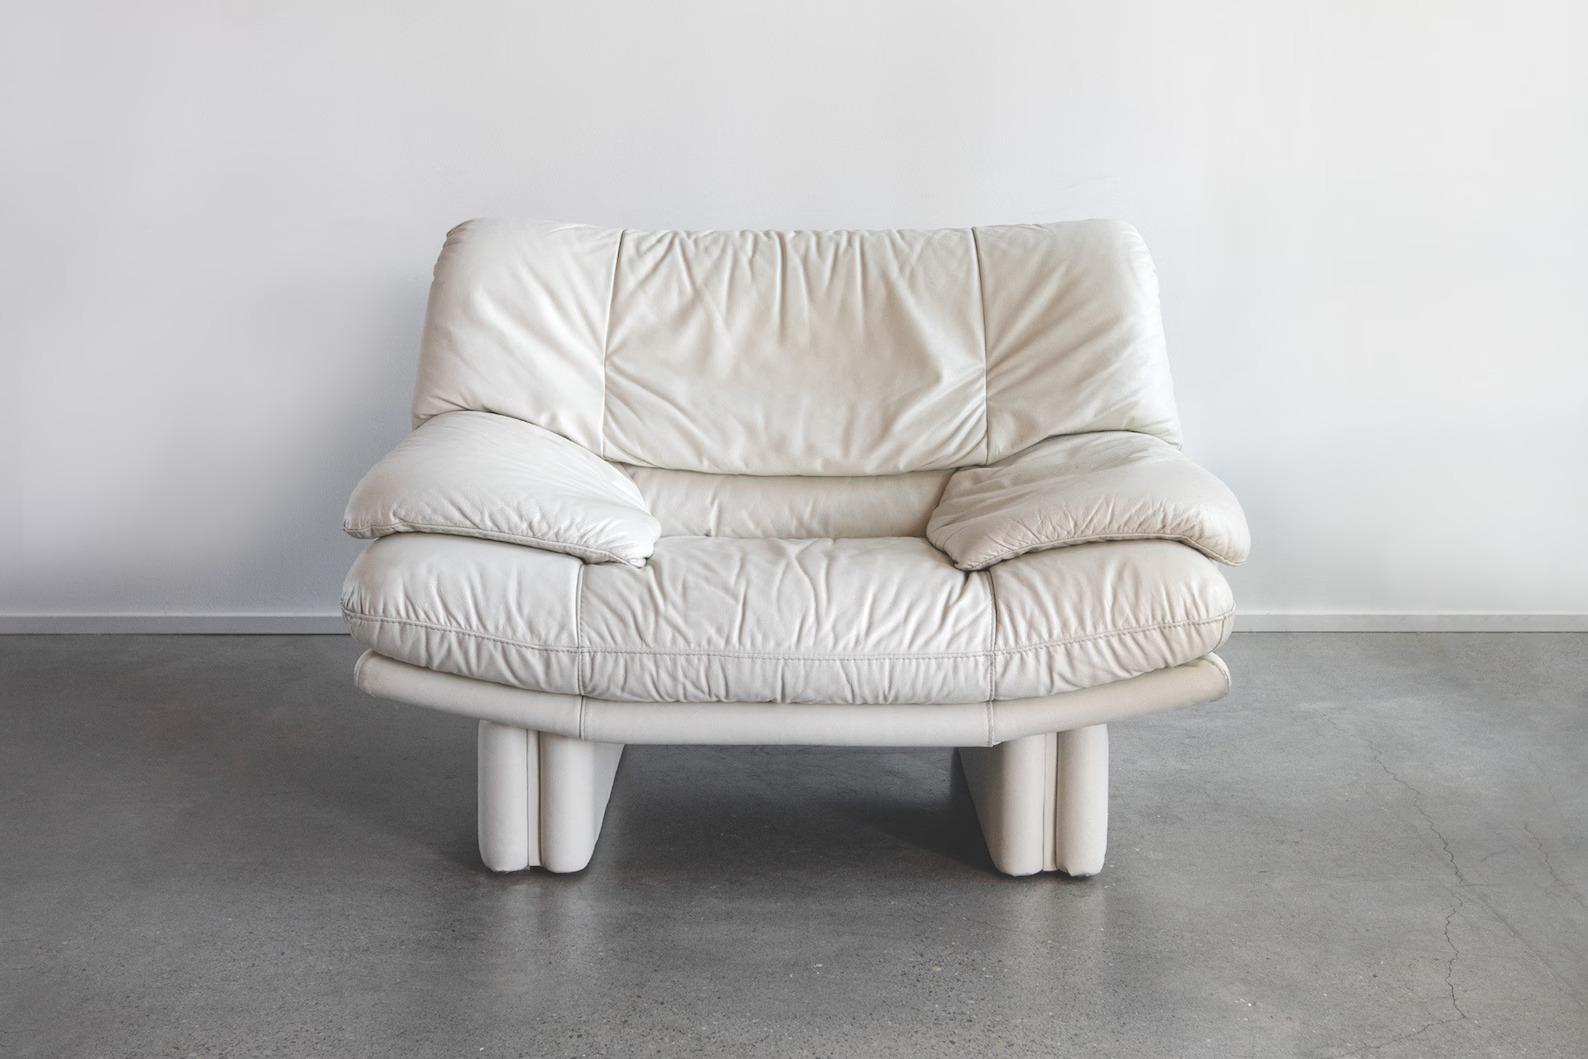 Installez-vous et sentez-vous comme sur un nuage avec cette superbe chaise postmoderne en cuir italien Nicoletti Salotti, d'un magnifique blanc cassé crème. Une pièce de choix dans votre salon ou n'importe où vous décidez de la placer. Il se marie